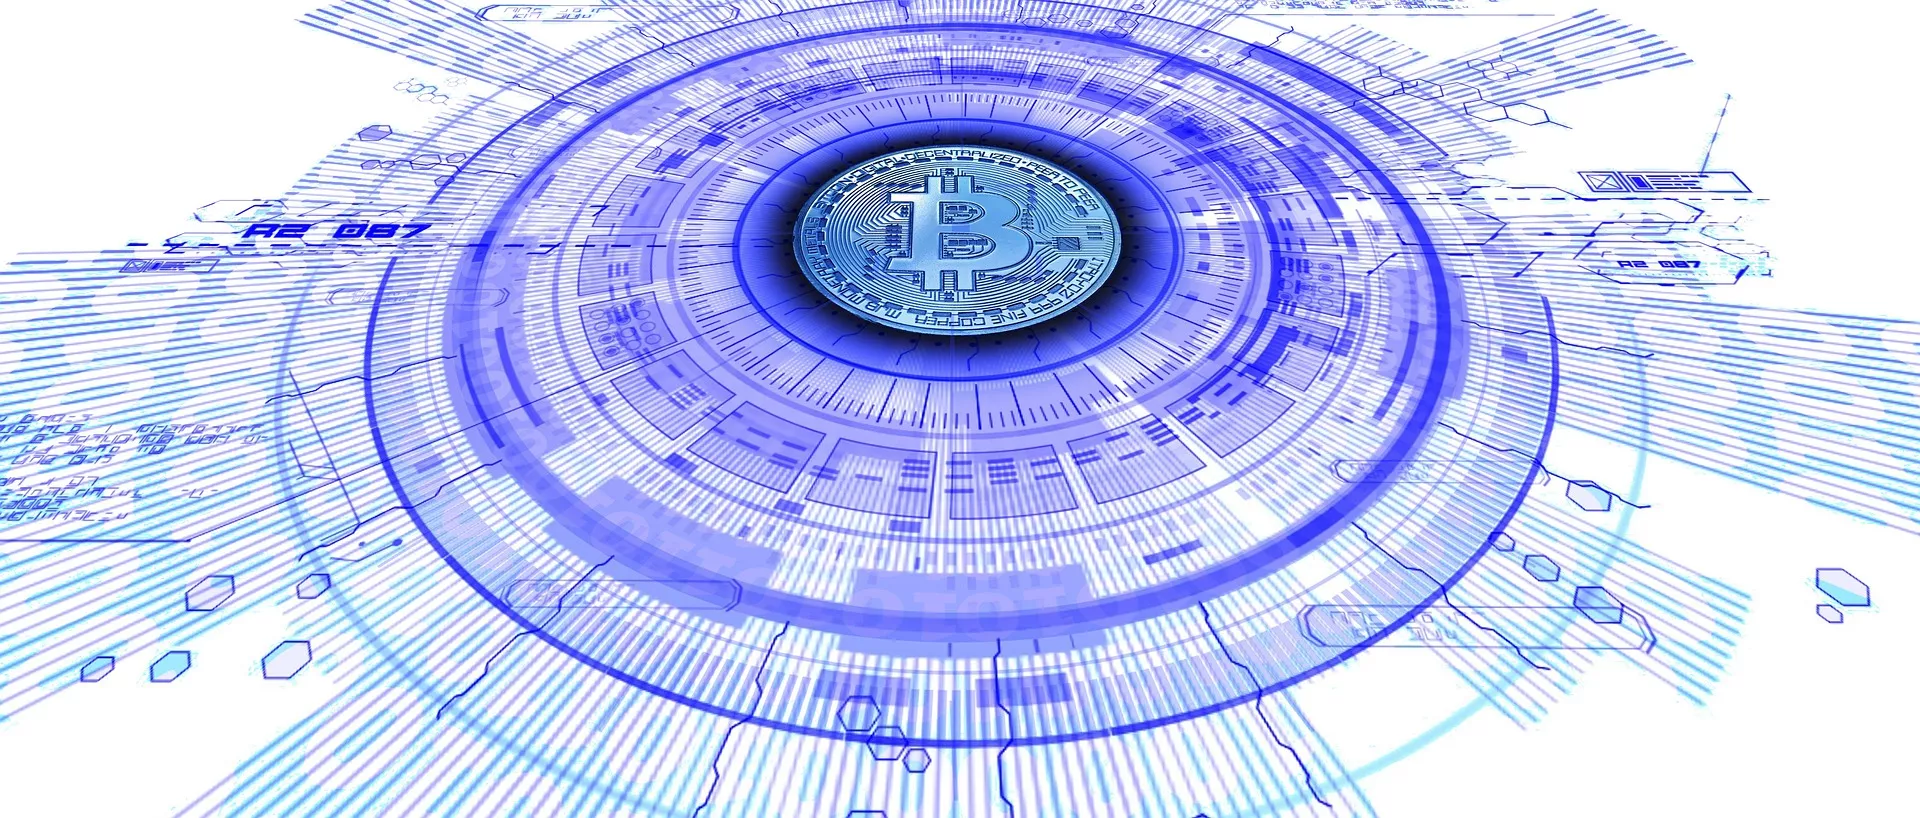 Masie: “Bitcoin is een geschenk dat de mensheid zal veranderen”